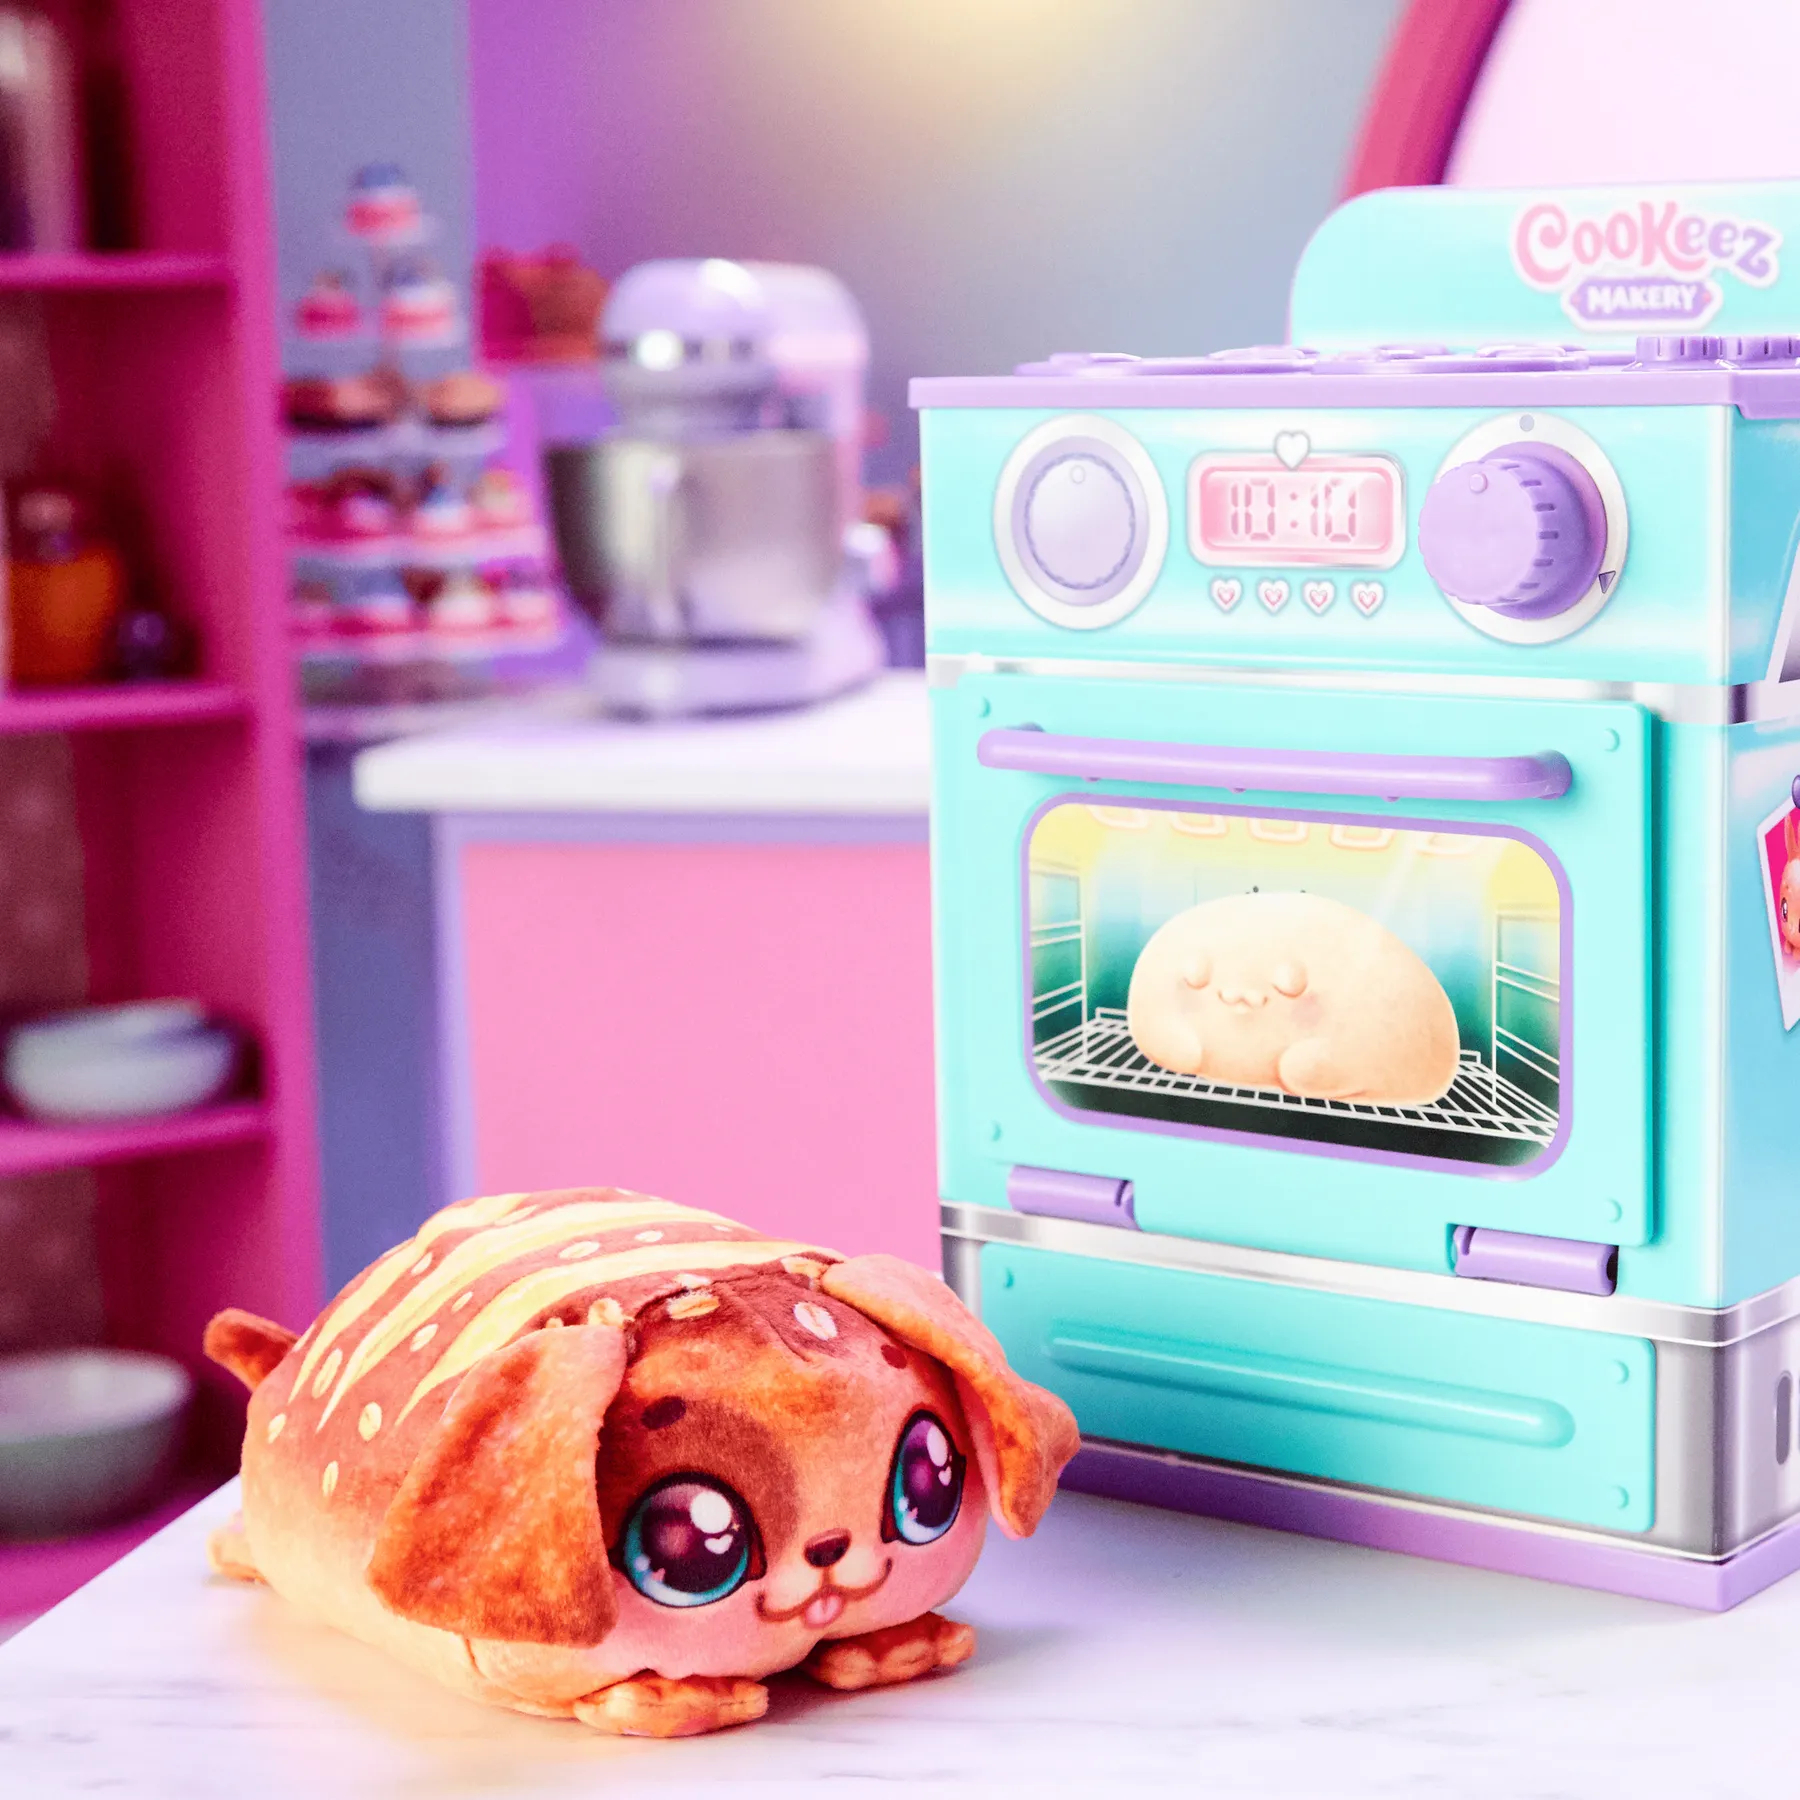 Интерактивная игрушка Cookeez Makery Магическая пекарня Паляница (23501) - фото 2